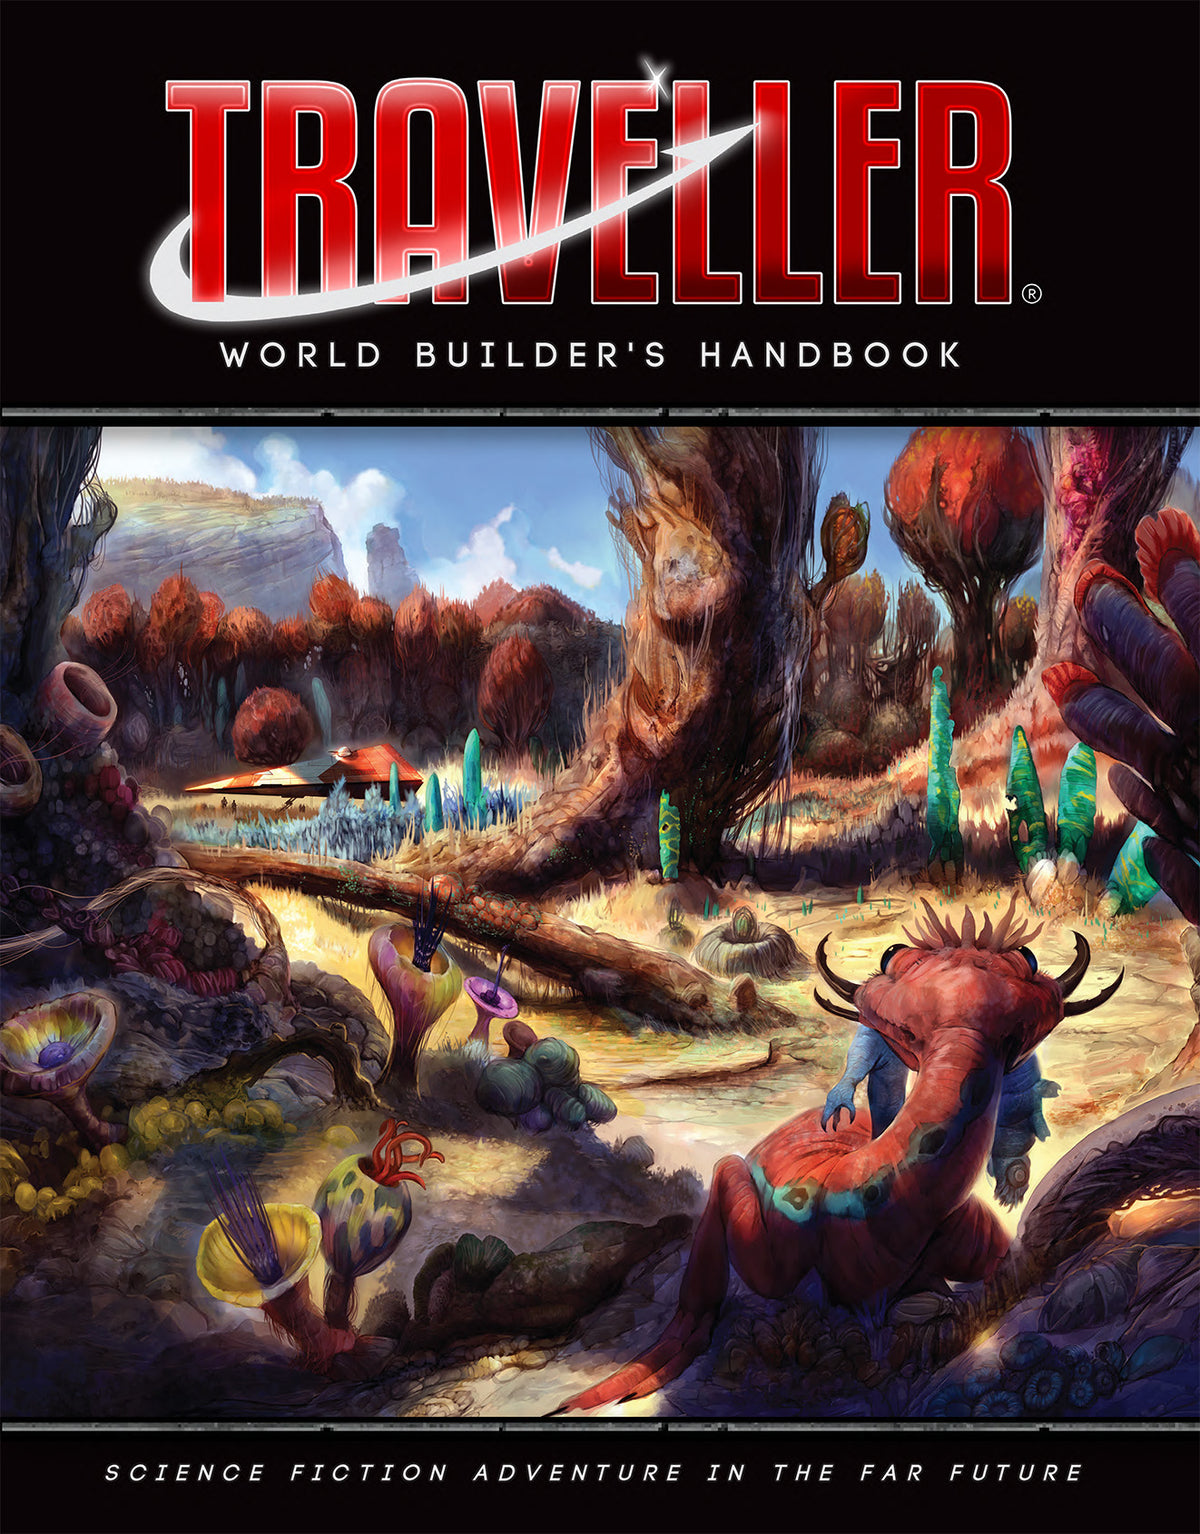 World Builder's Handbook